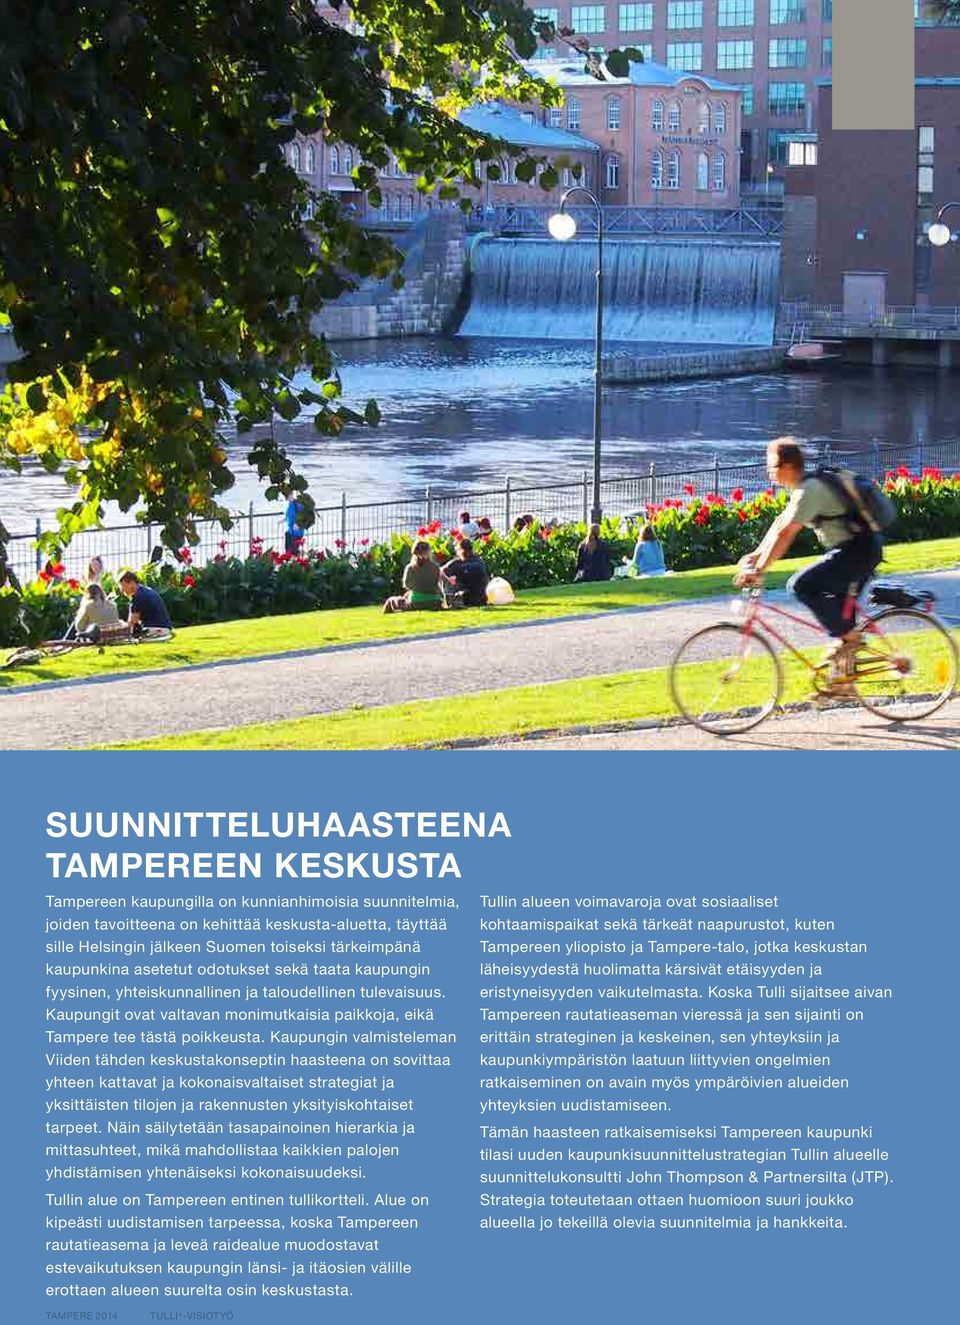 Kaupungit ovat valtavan monimutkaisia paikkoja, eikä Tampere tee tästä poikkeusta.